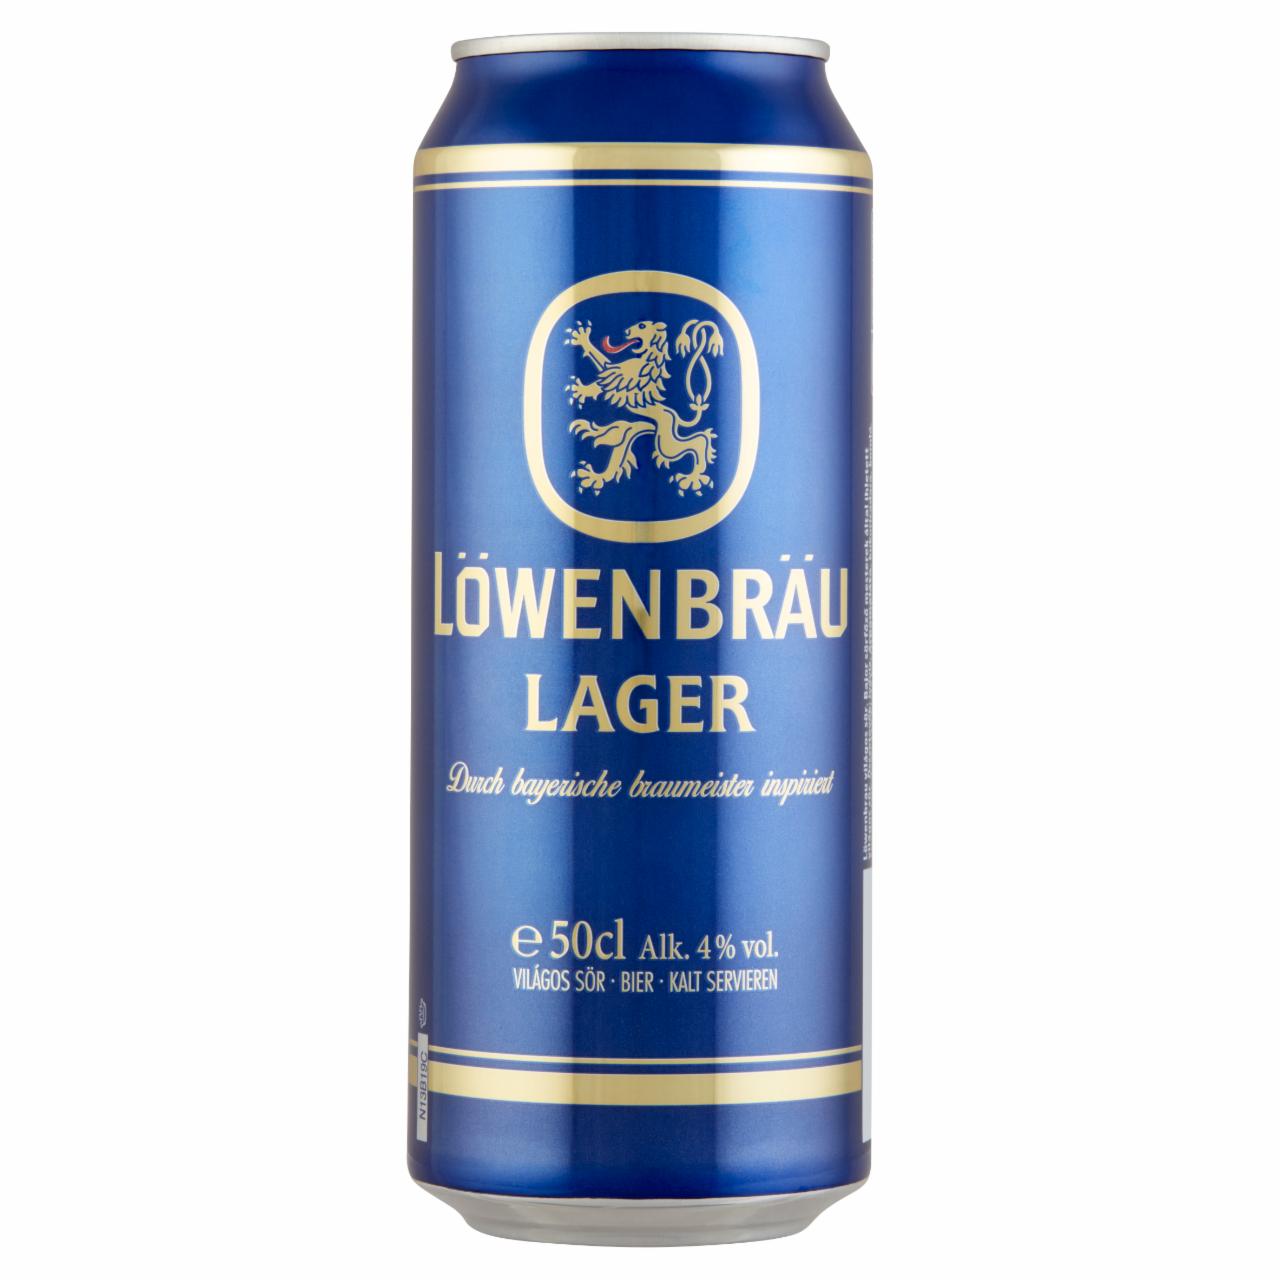 Képek - Löwenbräu Lager világos sör 4% 0,5 l